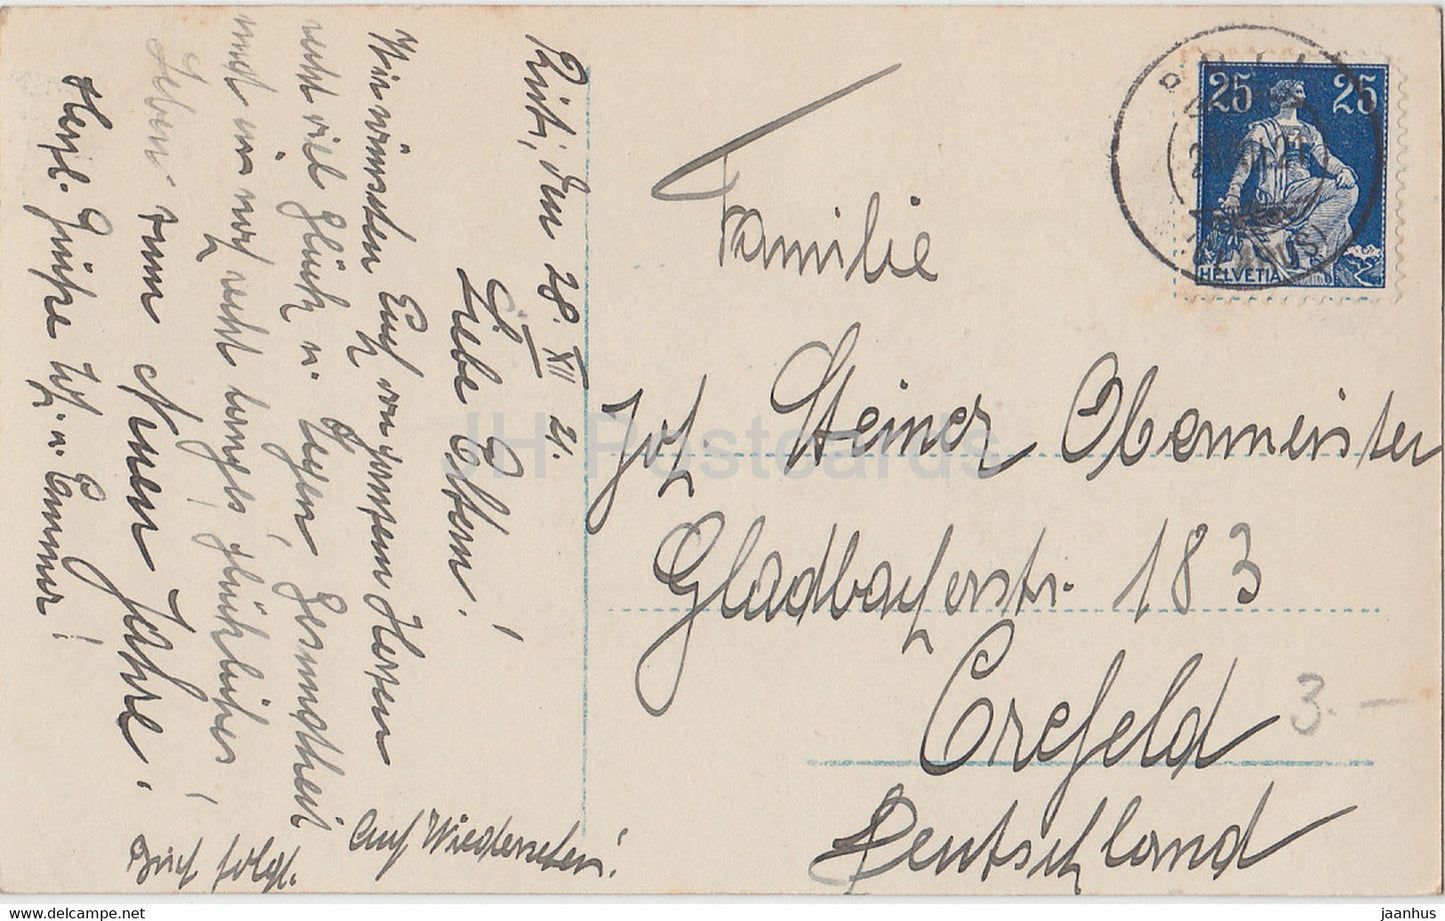 Carte de vœux du Nouvel An - Die Besten Wunsche zum neuen Jahre - enfants NPG 7233/6 - carte postale ancienne - 1921 - Allemagne - utilisé